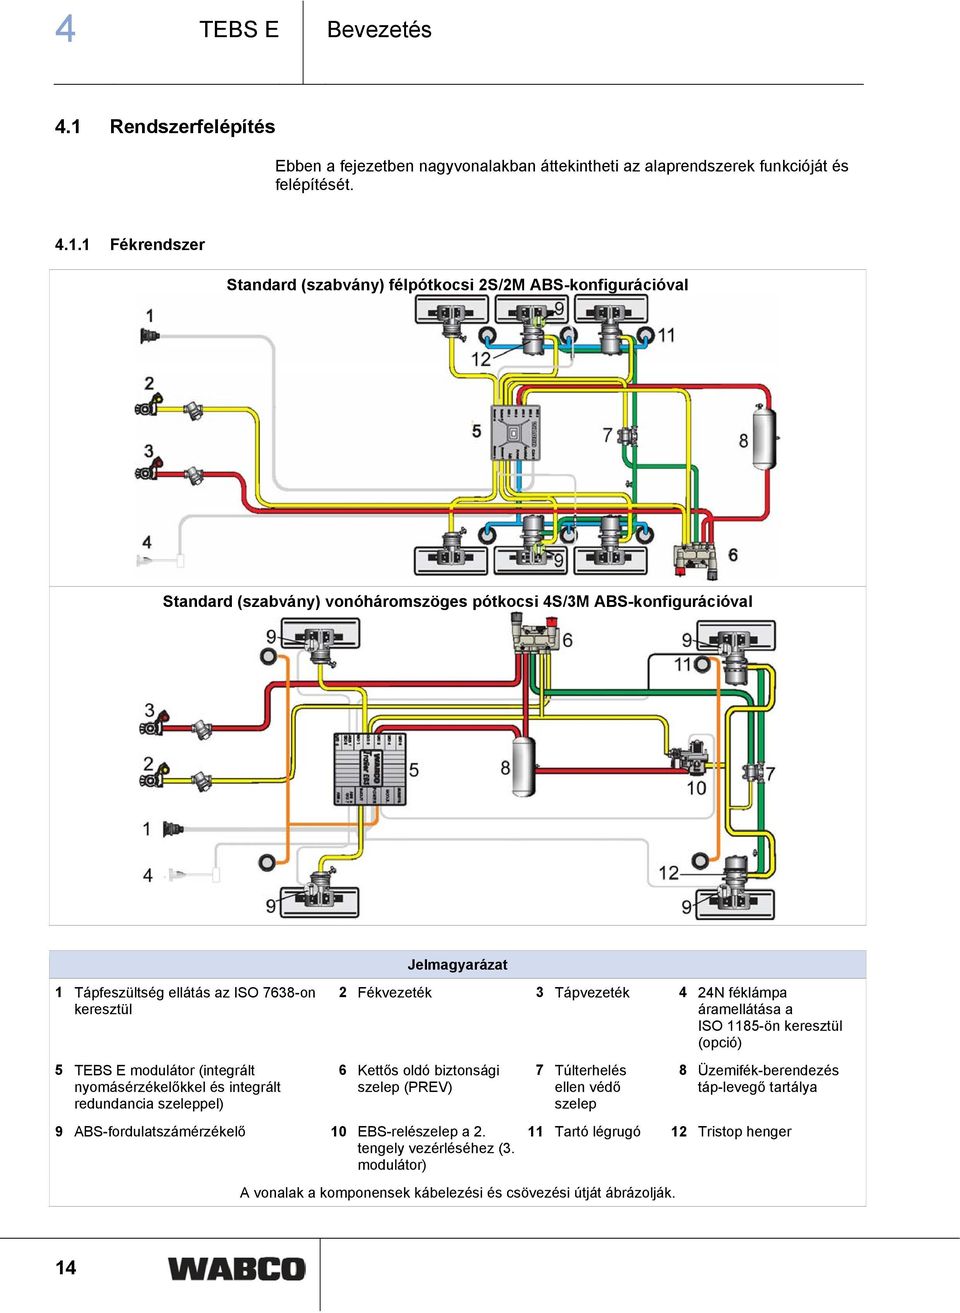 1 Fékrendszer Standard (szabvány) félpótkocsi 2S/2M ABS-konfigurációval Standard (szabvány) vonóháromszöges pótkocsi 4S/3M ABS-konfigurációval 1 Tápfeszültség ellátás az ISO 7638-on keresztül 5 TEBS